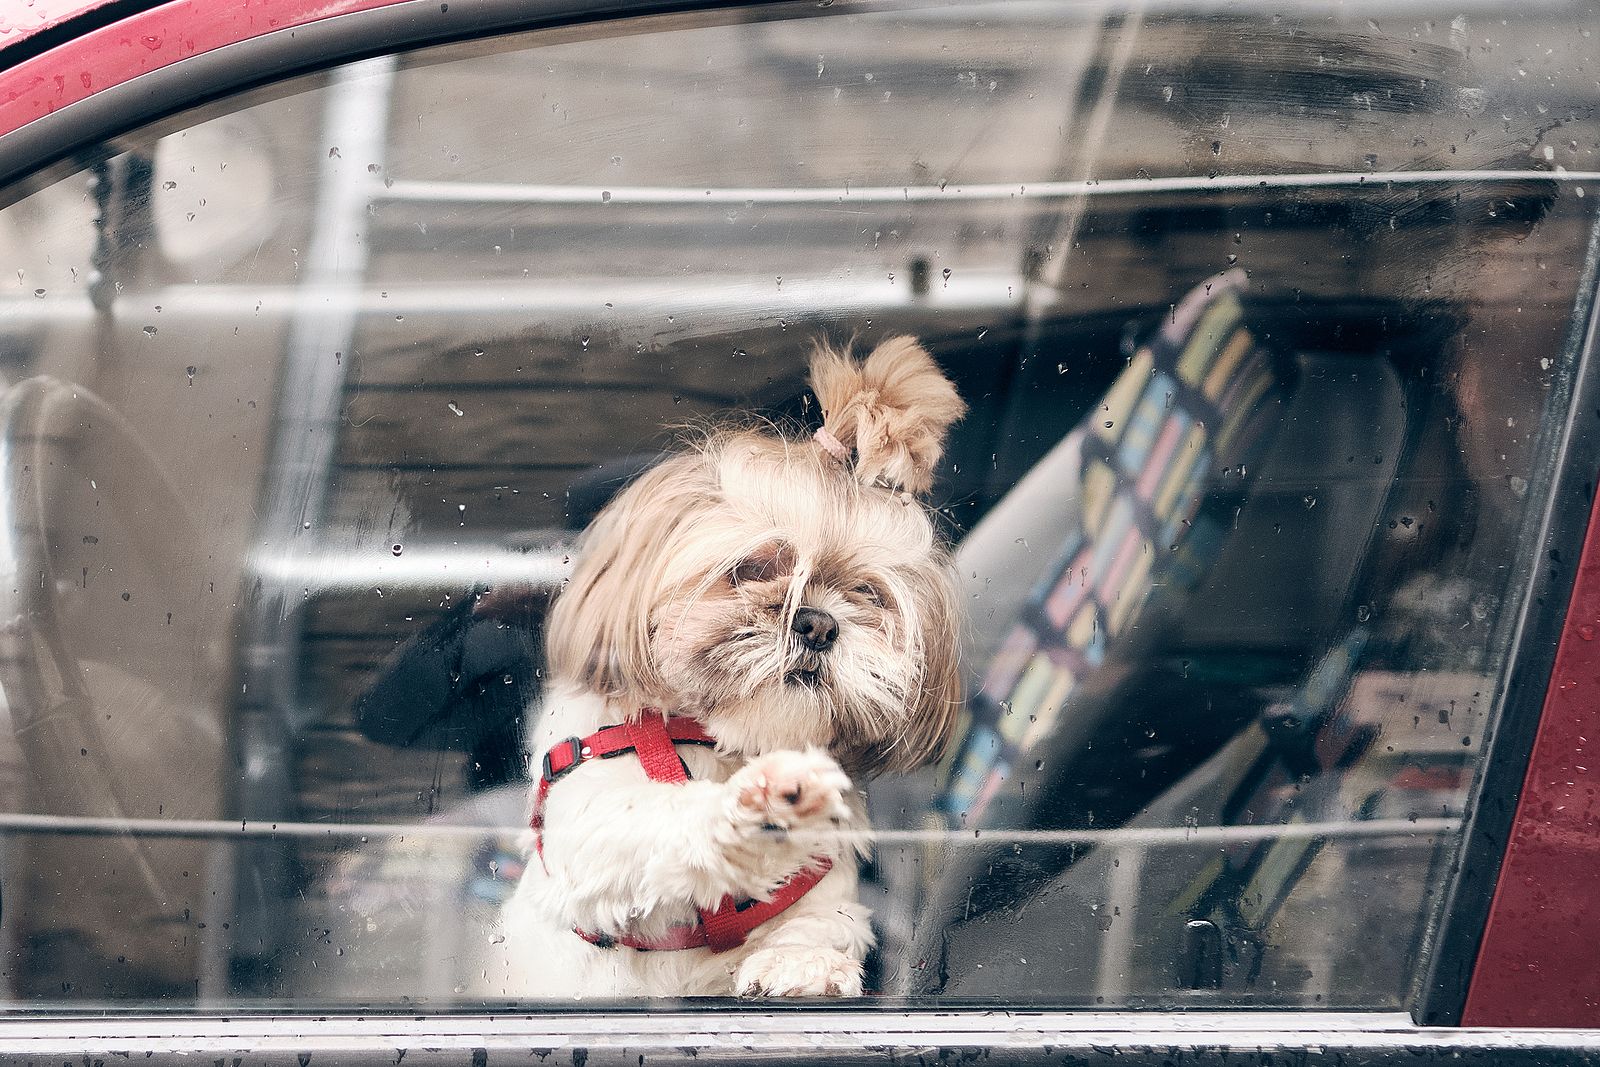 Dejar a una mascota sola en el coche puede suponer multas de hasta 10.000 euros